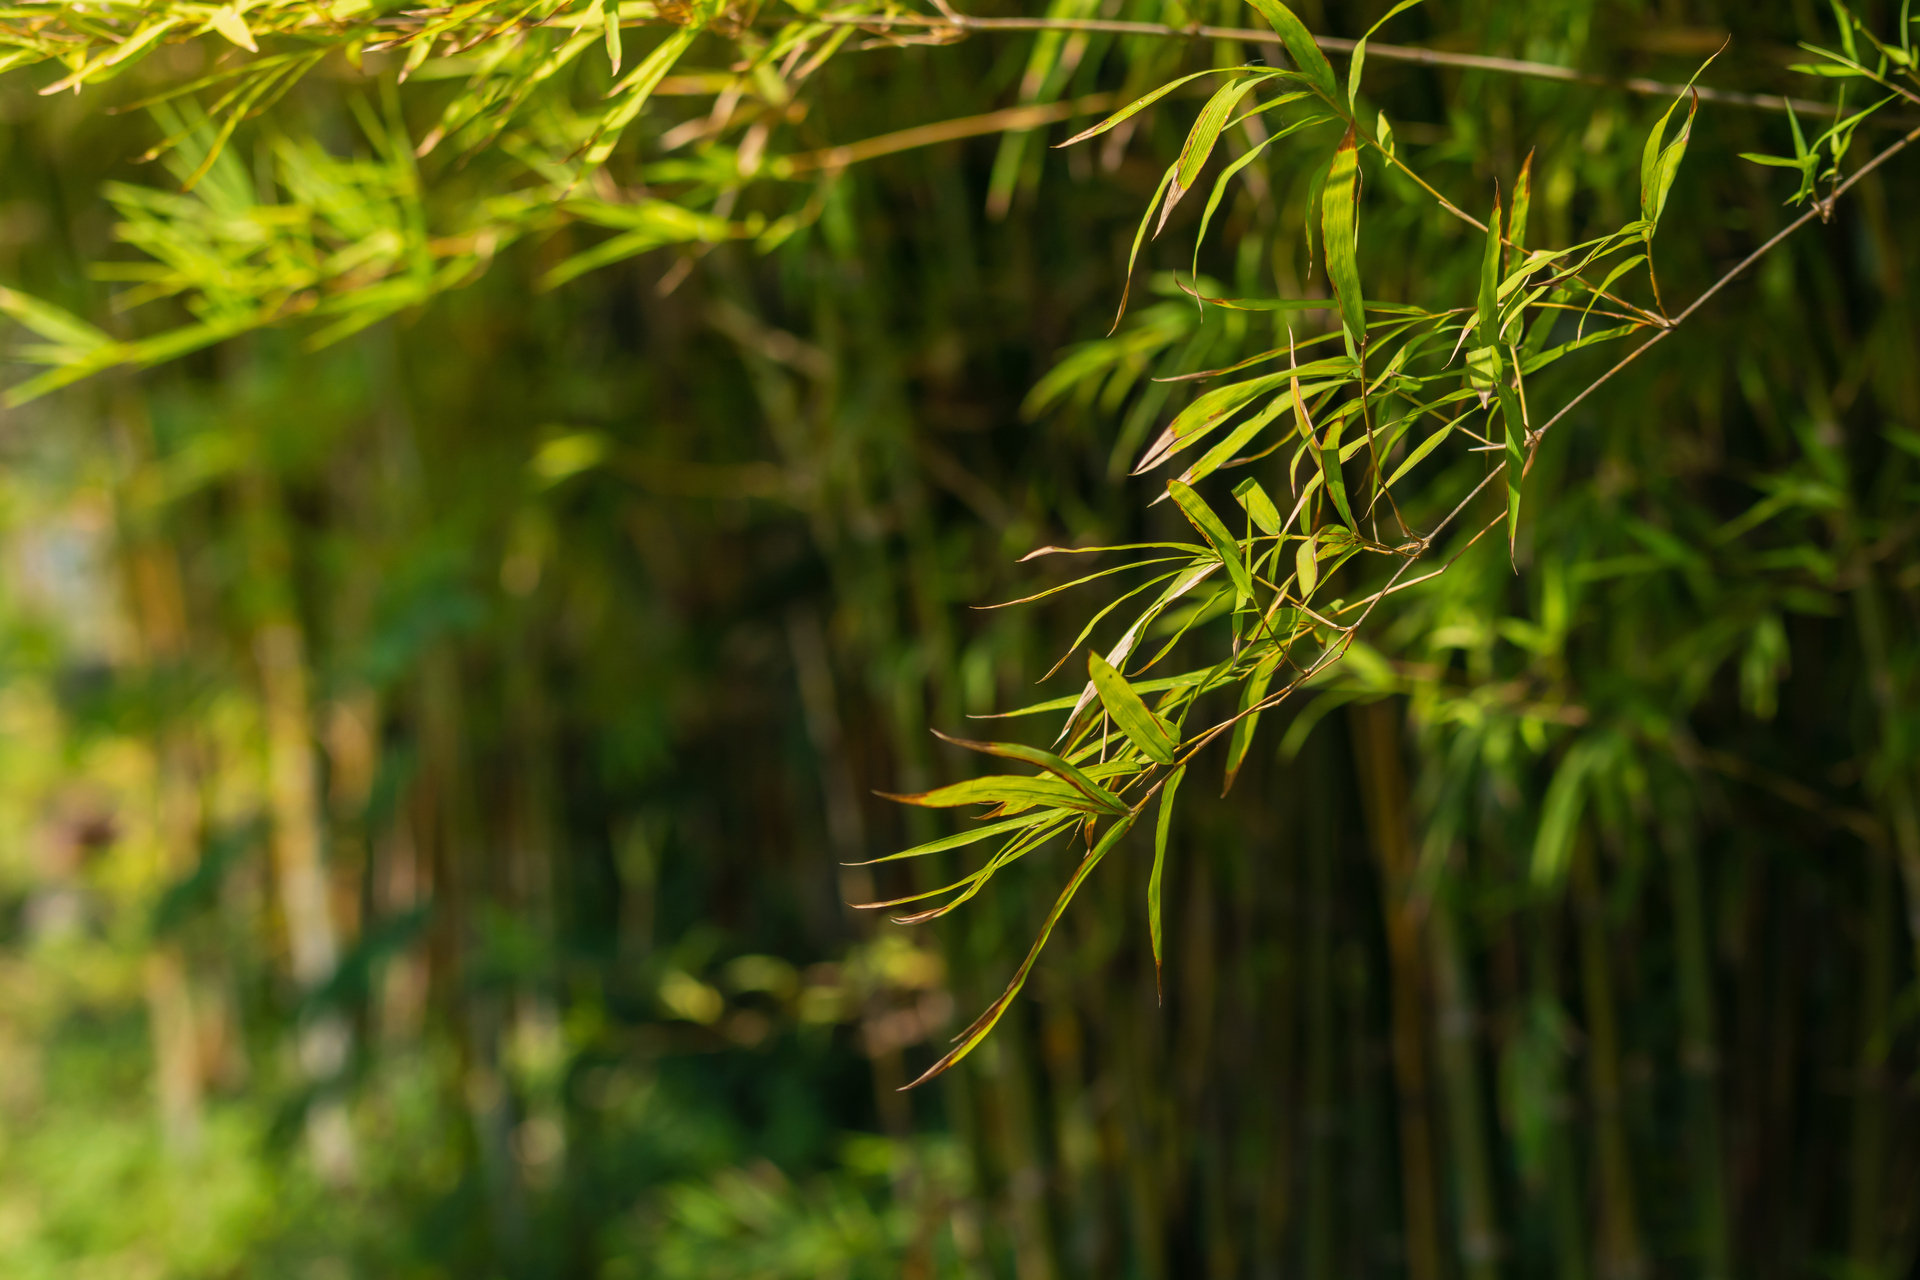 Zwisający bambus, otulony bujną zielenią, która go otacza